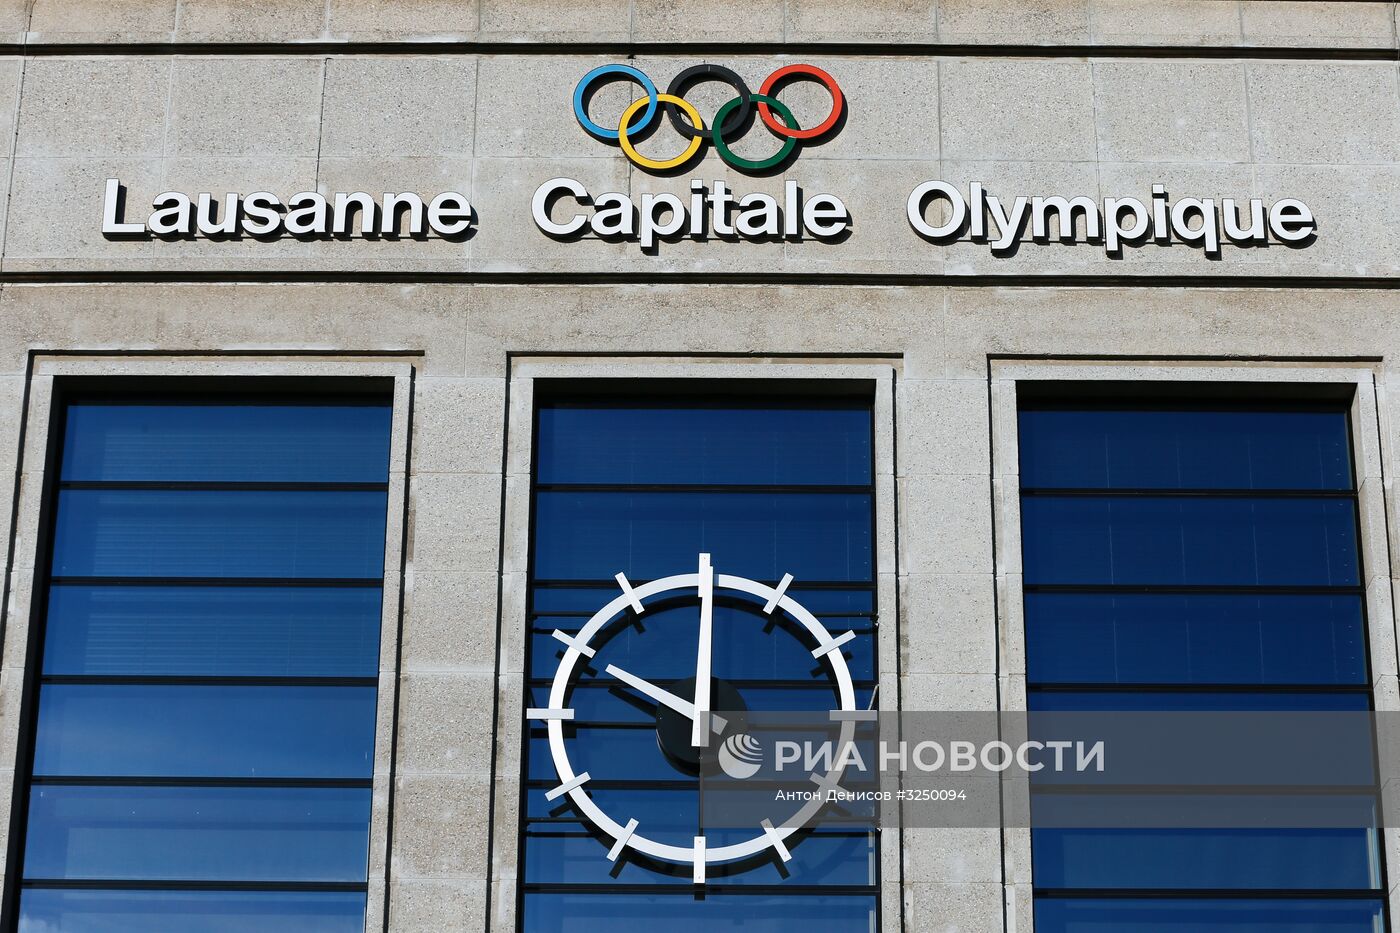 Исполком МОК примет решение об участии сборной России в Олимпиаде-2018